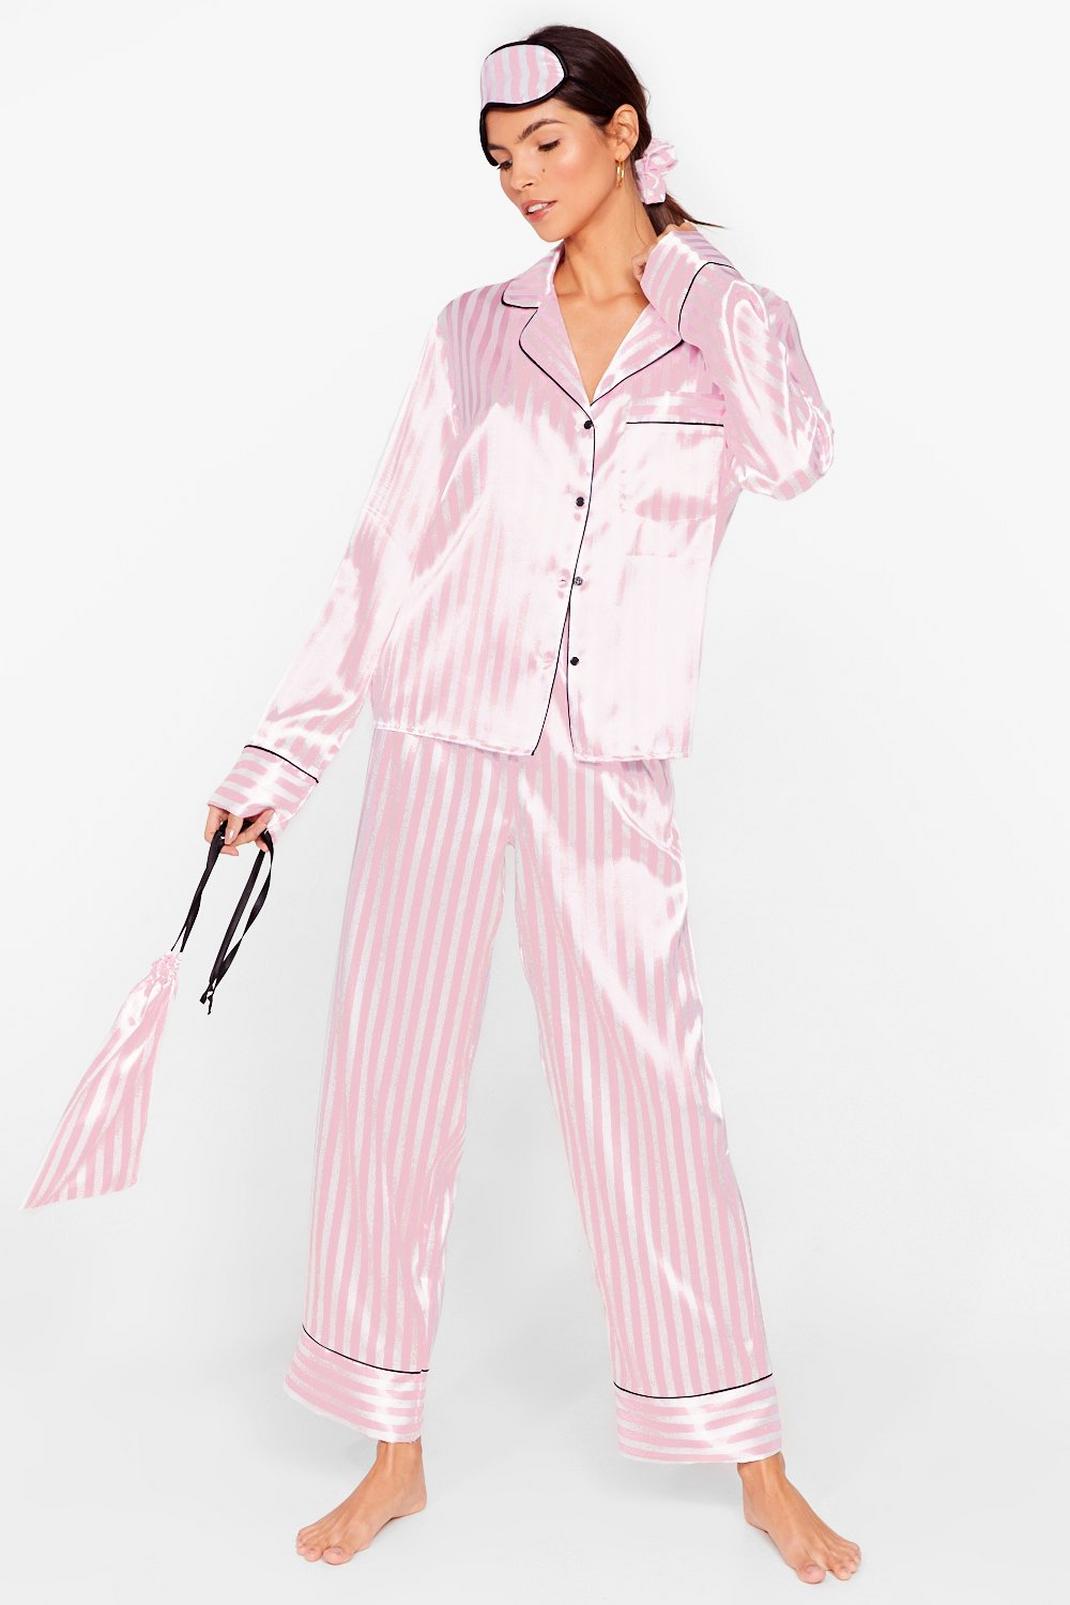 Satin Striped 6 Pc Christmas Pajamas